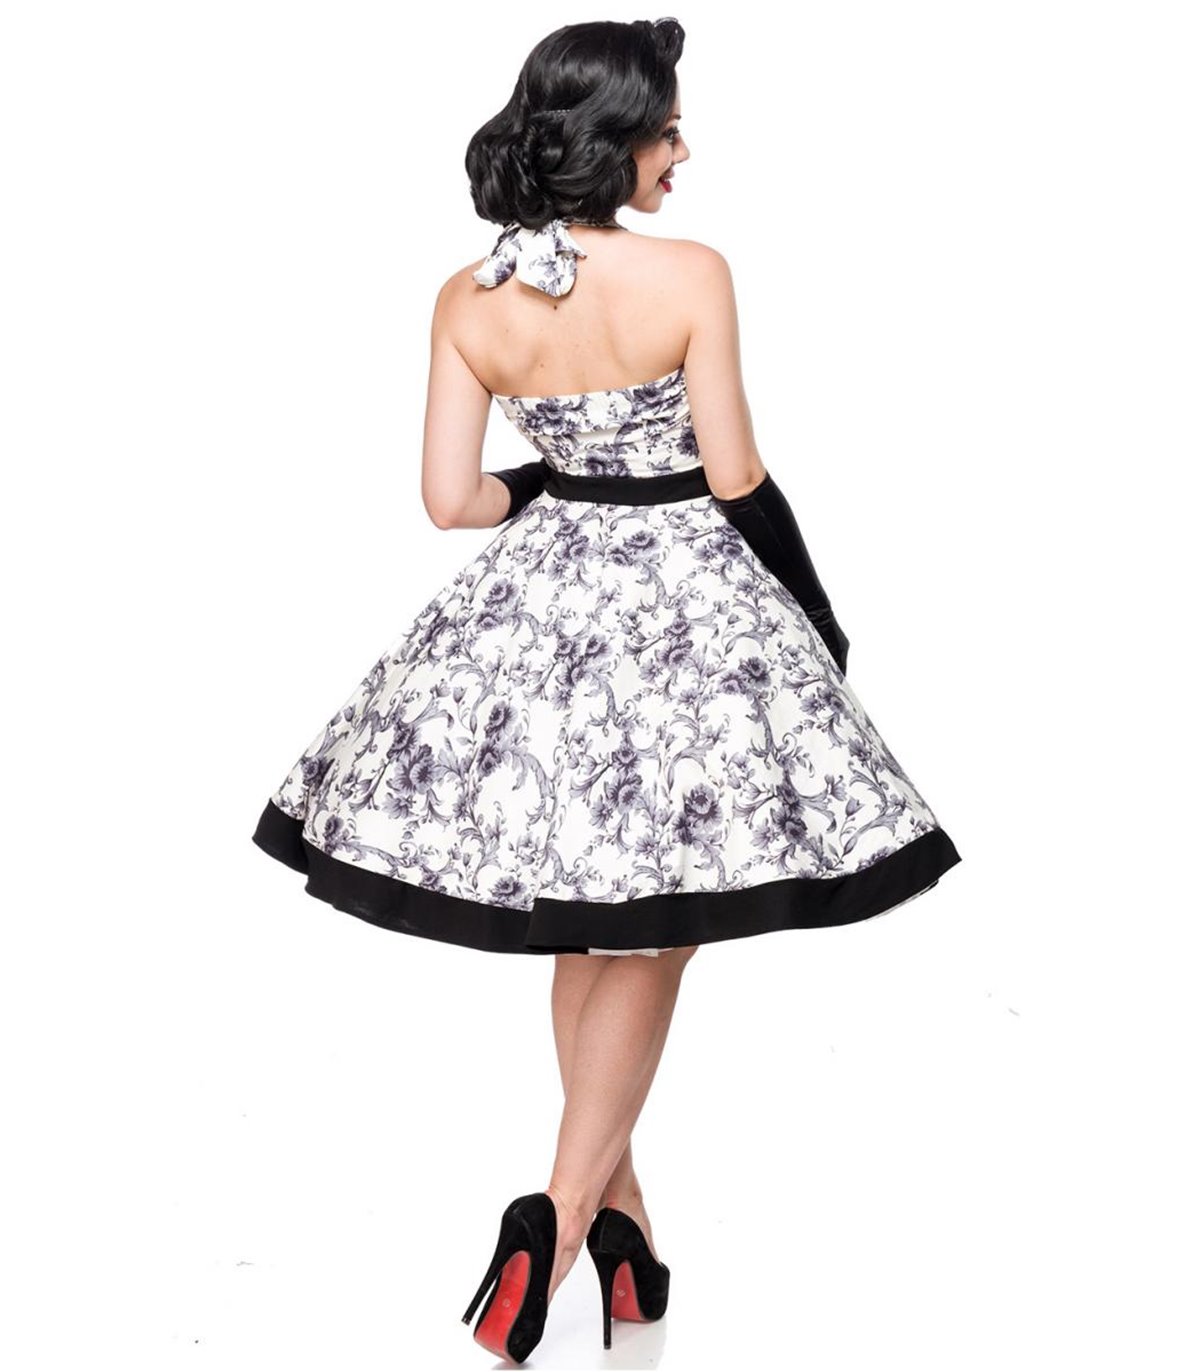 Belsira Vintage Swing Kleid schwarz/weiss - midi Kleider ...